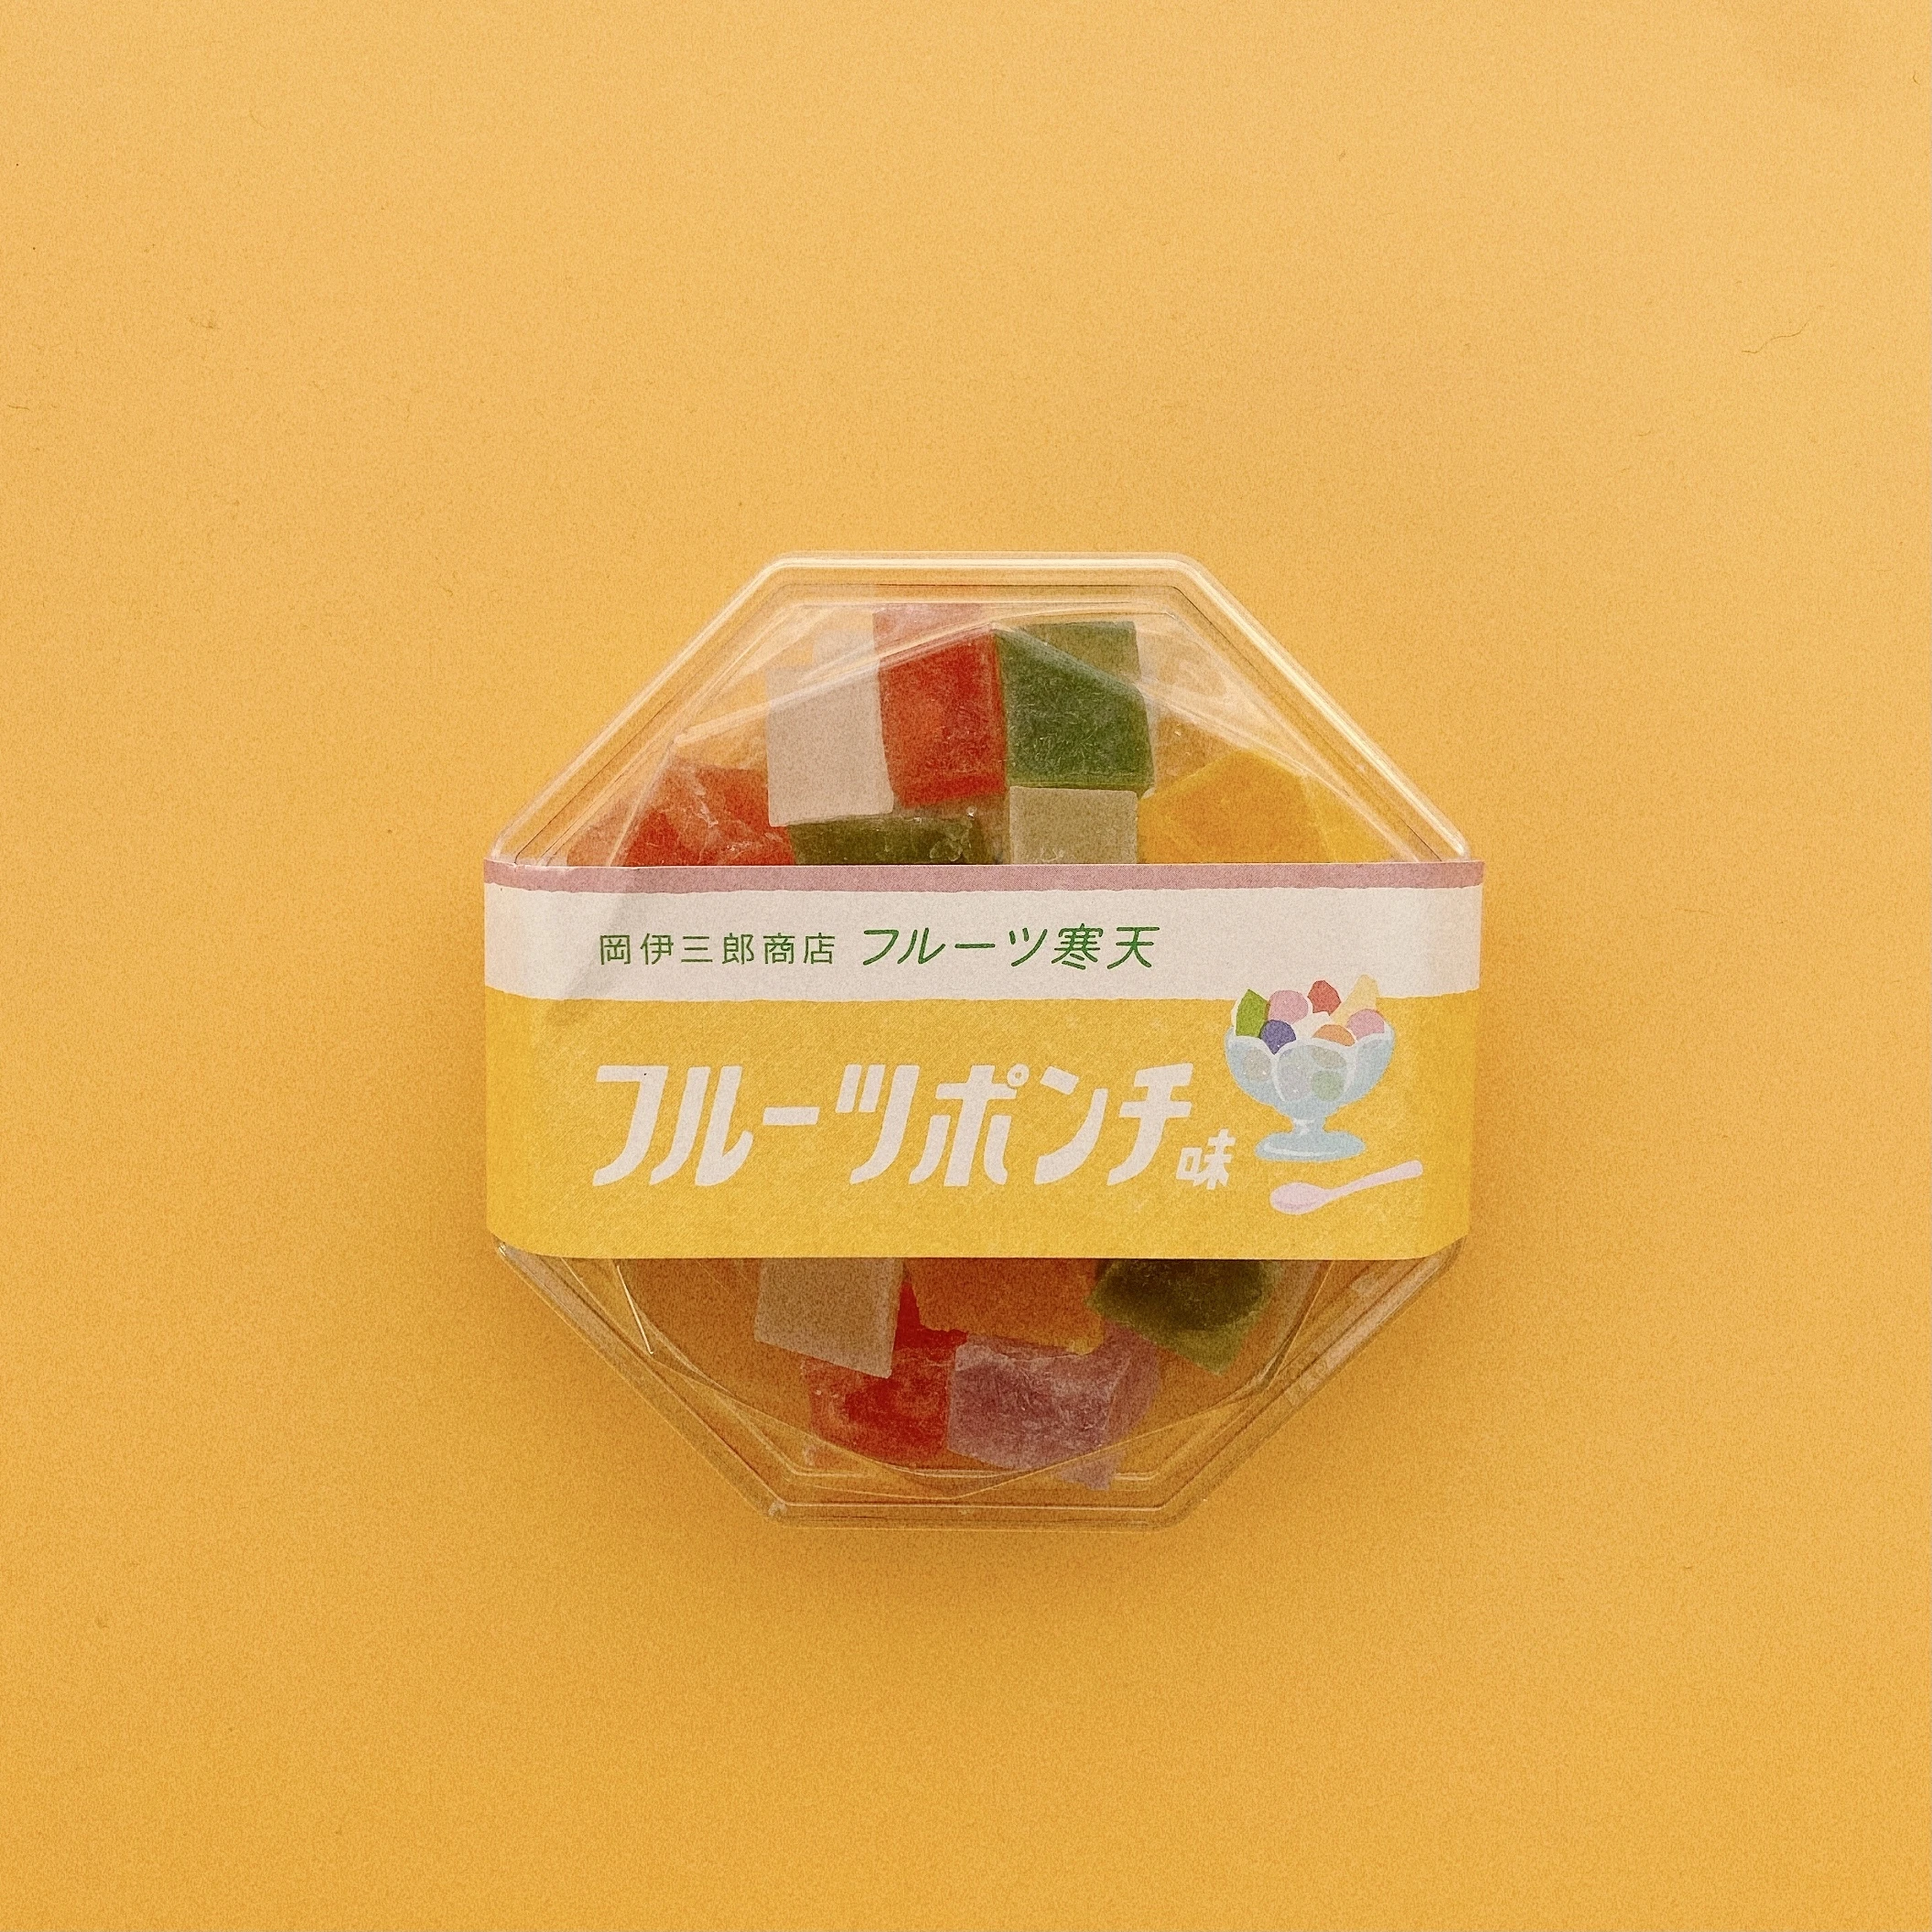 日本百貨店で販売されている琥珀糖「フルーツポンチ」